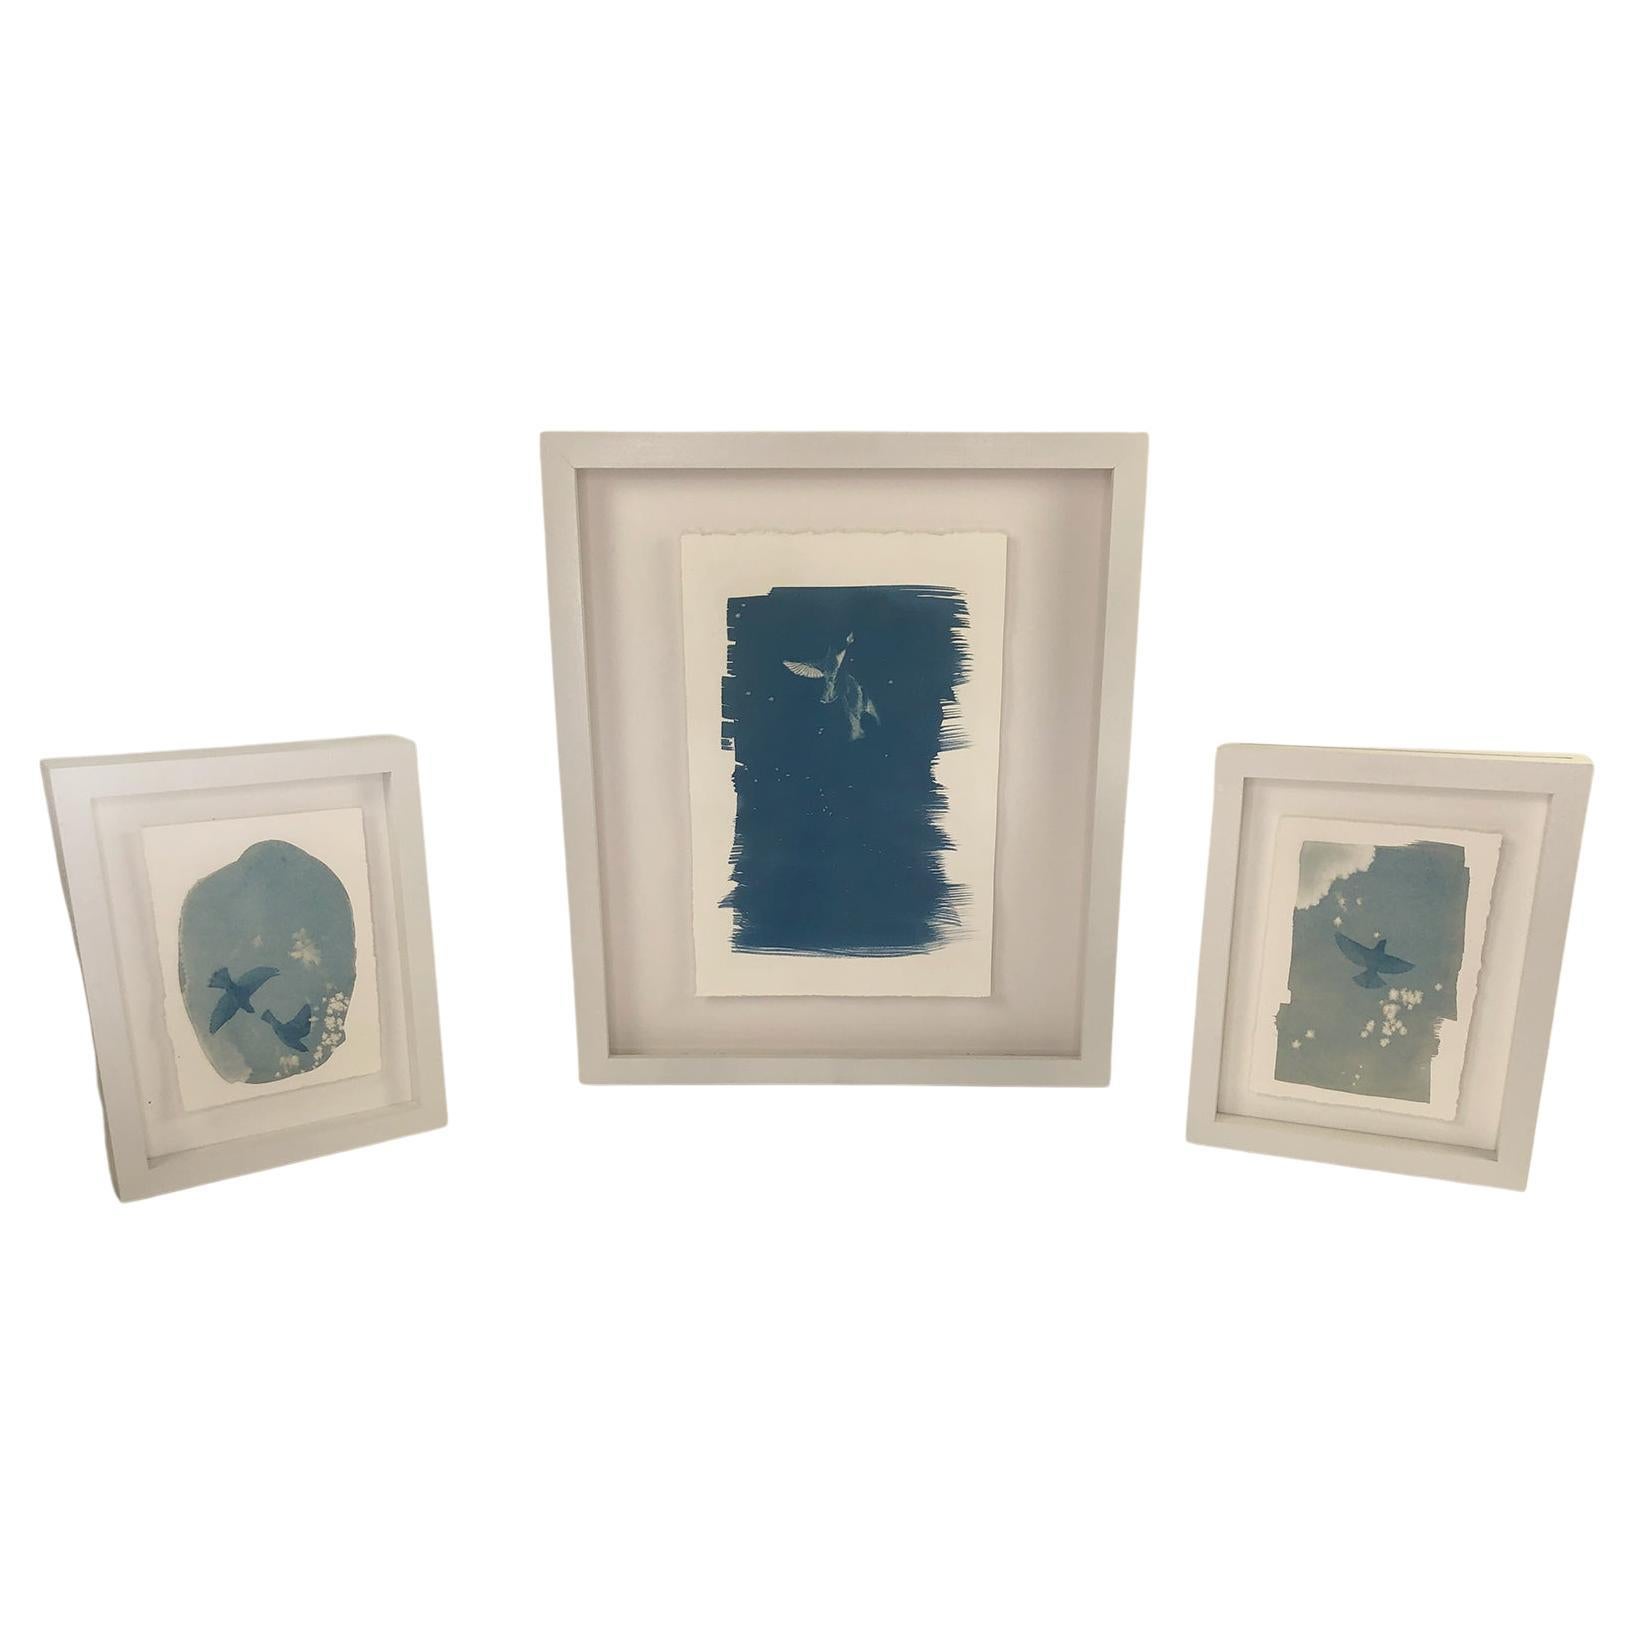 Ensemble de trois tirages cyanotypes encadrés de l'artiste Sara L. Morton